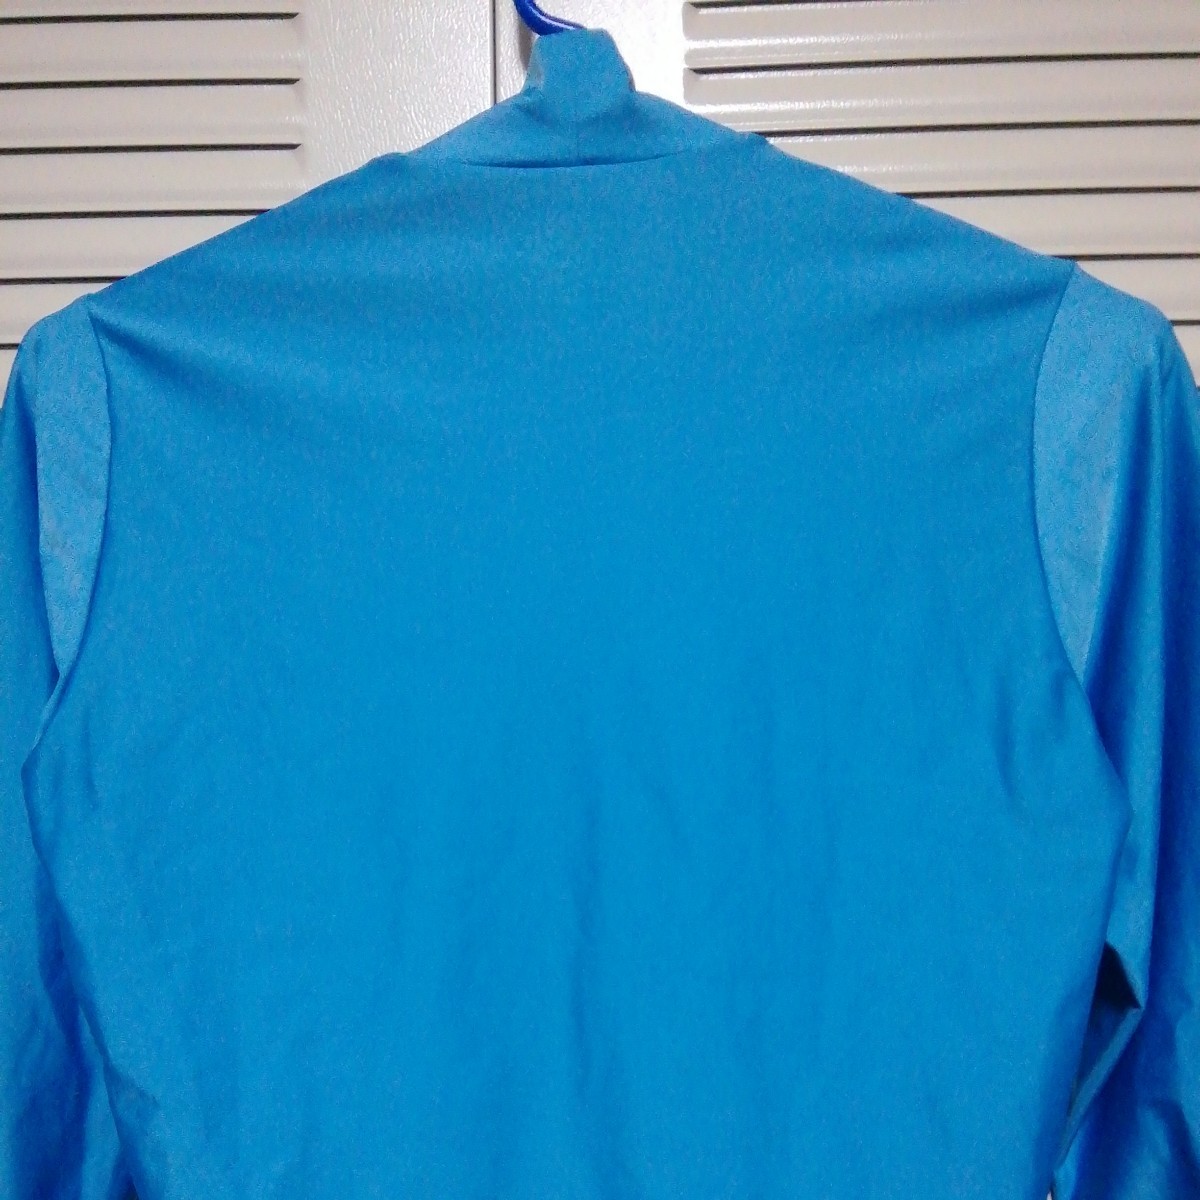 *[ б/у одежда ]X-TEAM SPORTS( X команда спорт ) длинный рукав компрессионный рубашка (mok шея ) M размер синий возможно женский (^_^;)